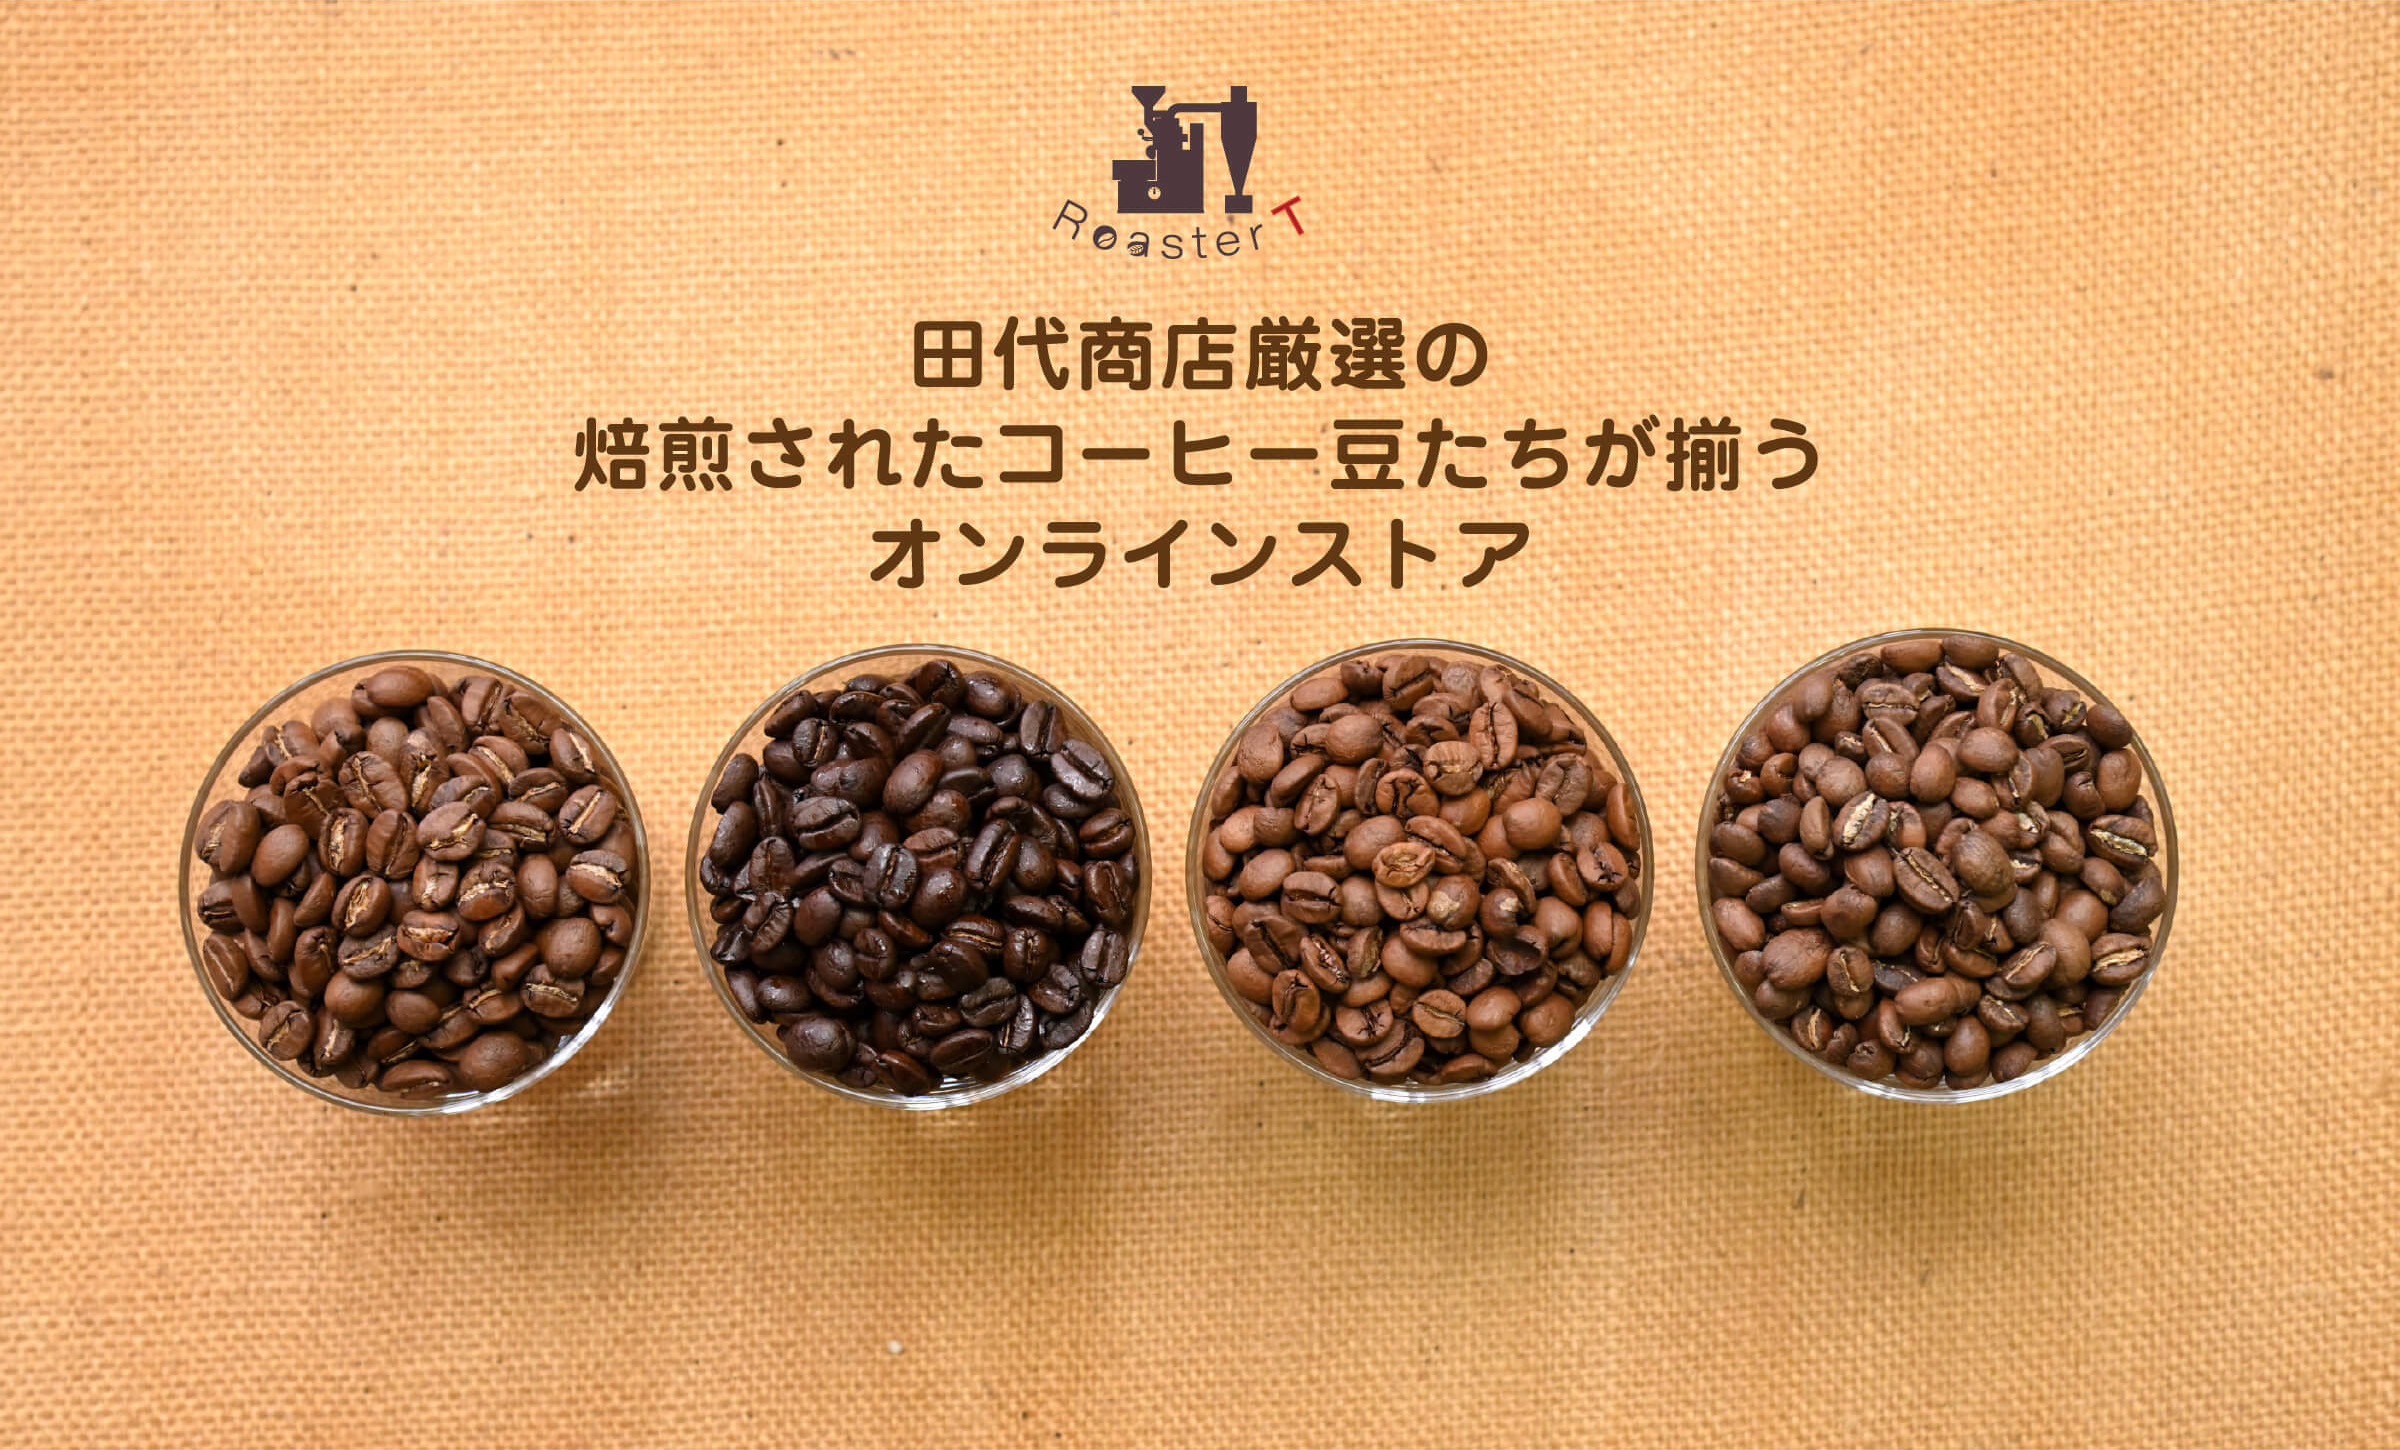 田代商店厳選の焙煎されたコーヒー豆たちが揃うオンラインストア